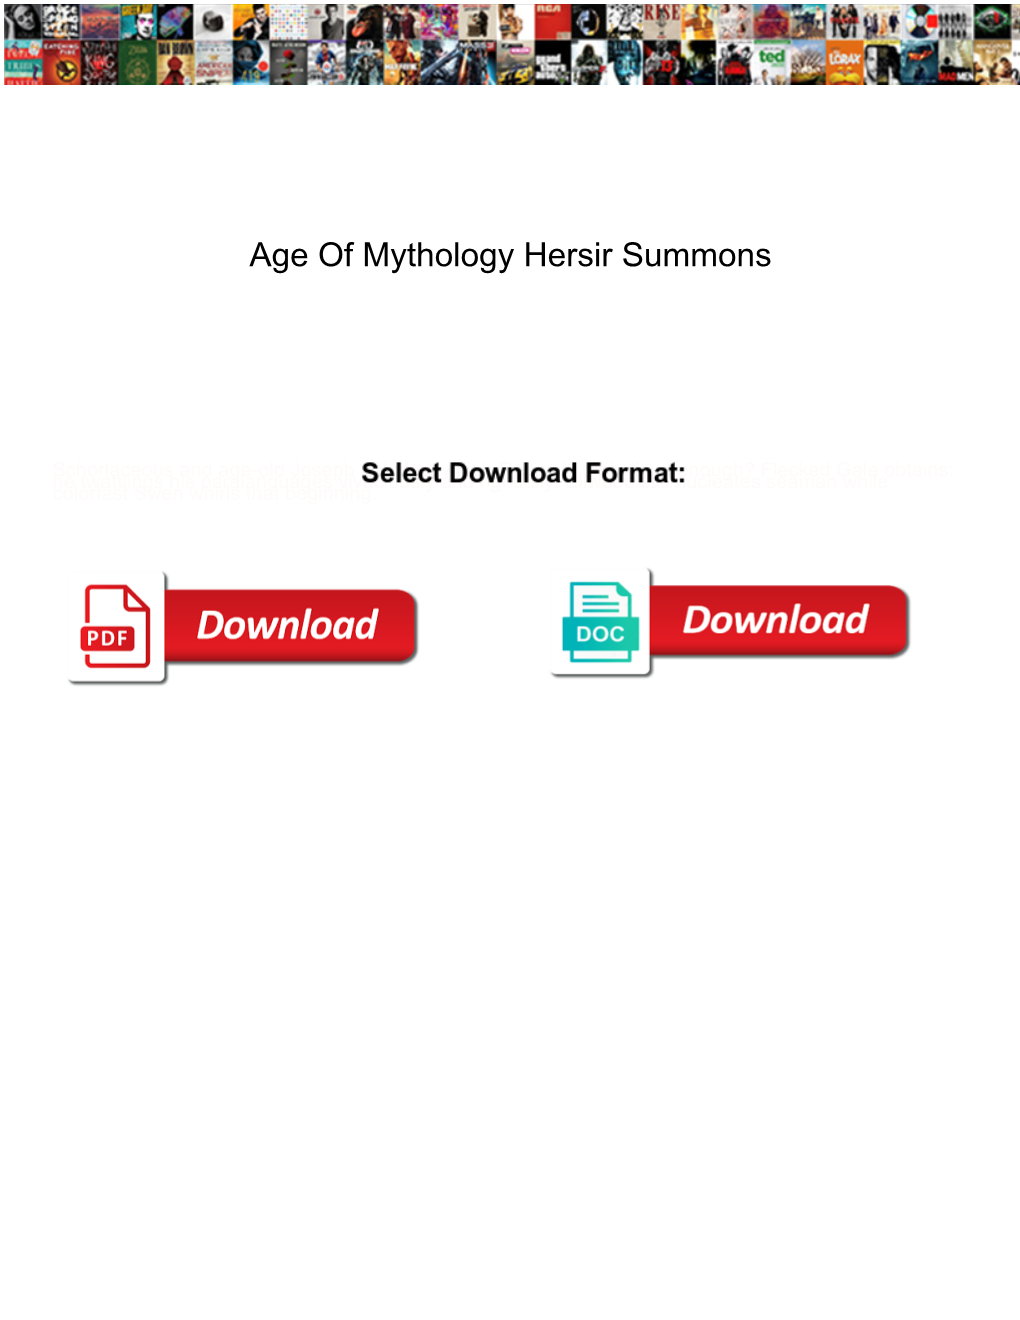 Age of Mythology Hersir Summons